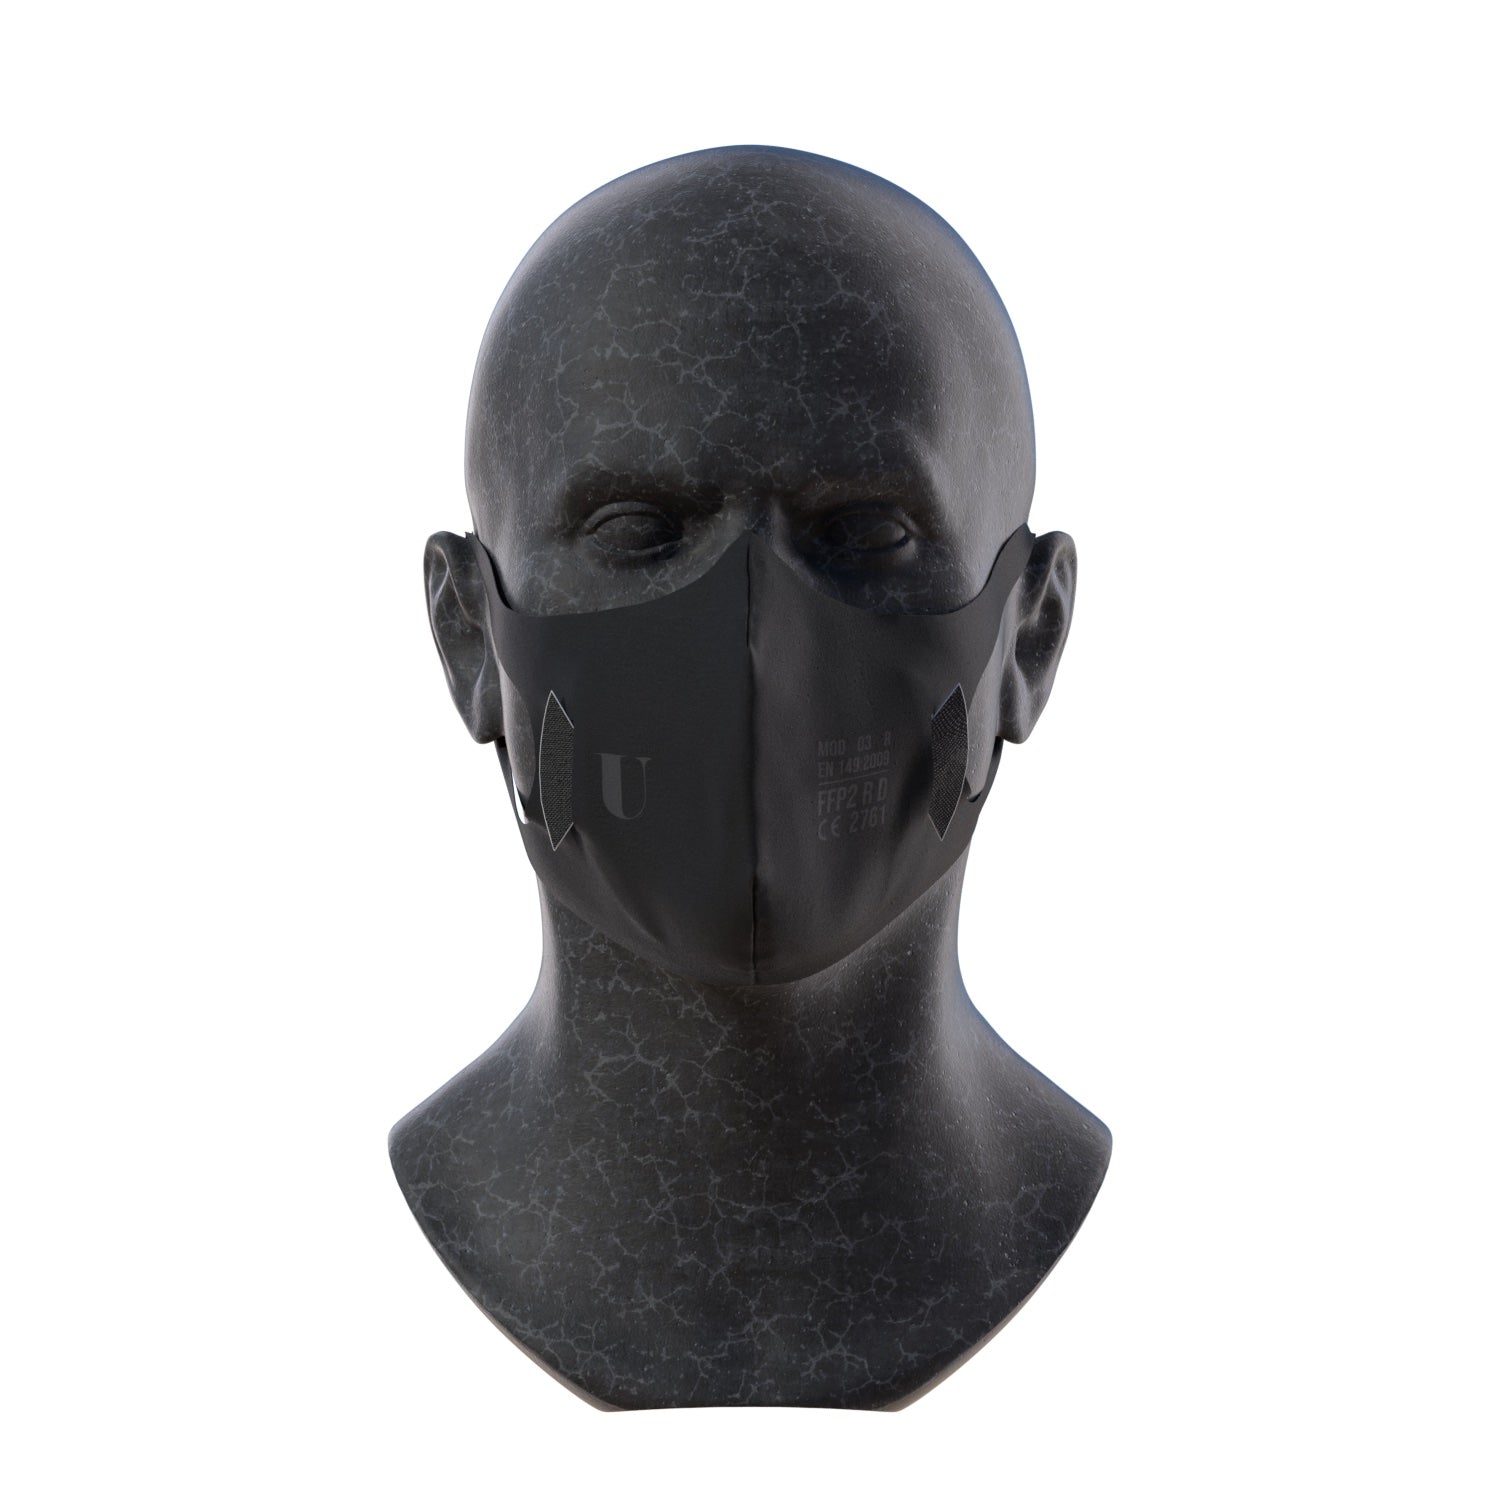 Masque FFP2 noir pour enfant personnalisable - Torreya